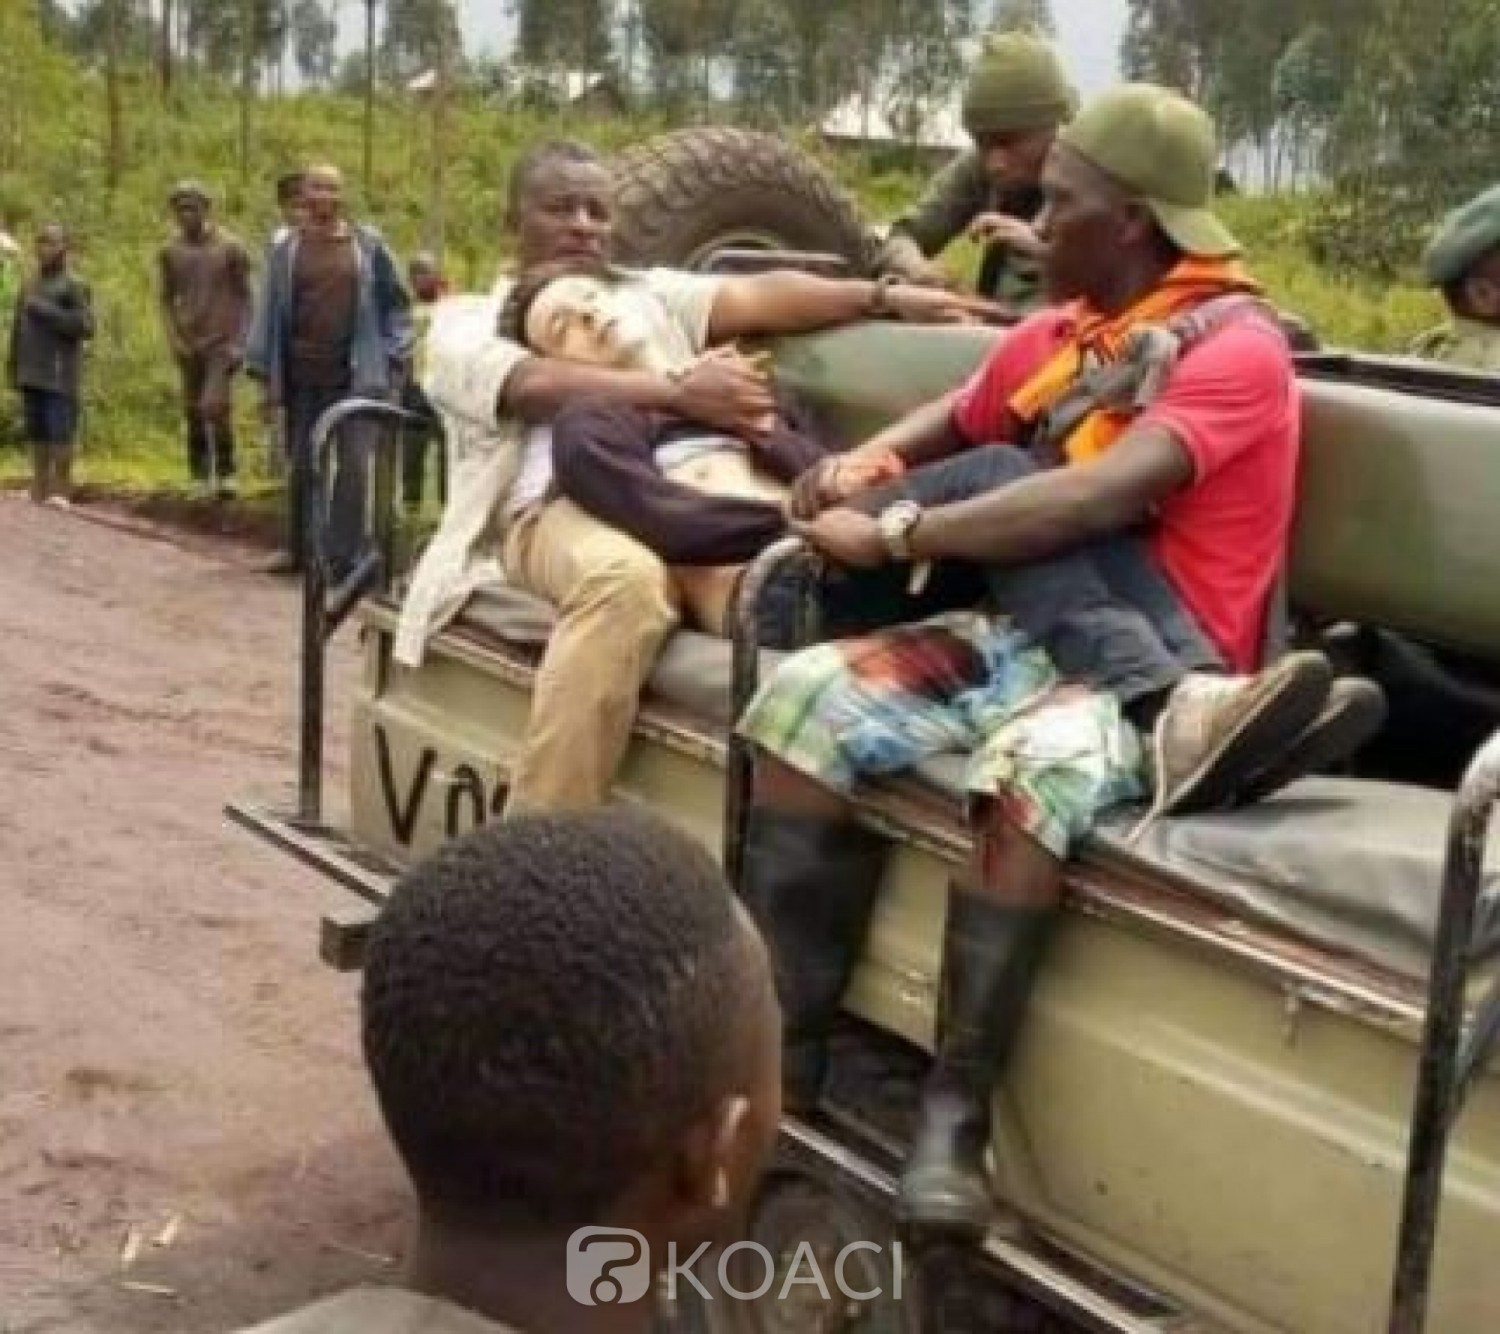 RDC : Luca Attanasio, ambassadeur d'Italie tué dans une attaque armée dans la région du Nord-Kivu